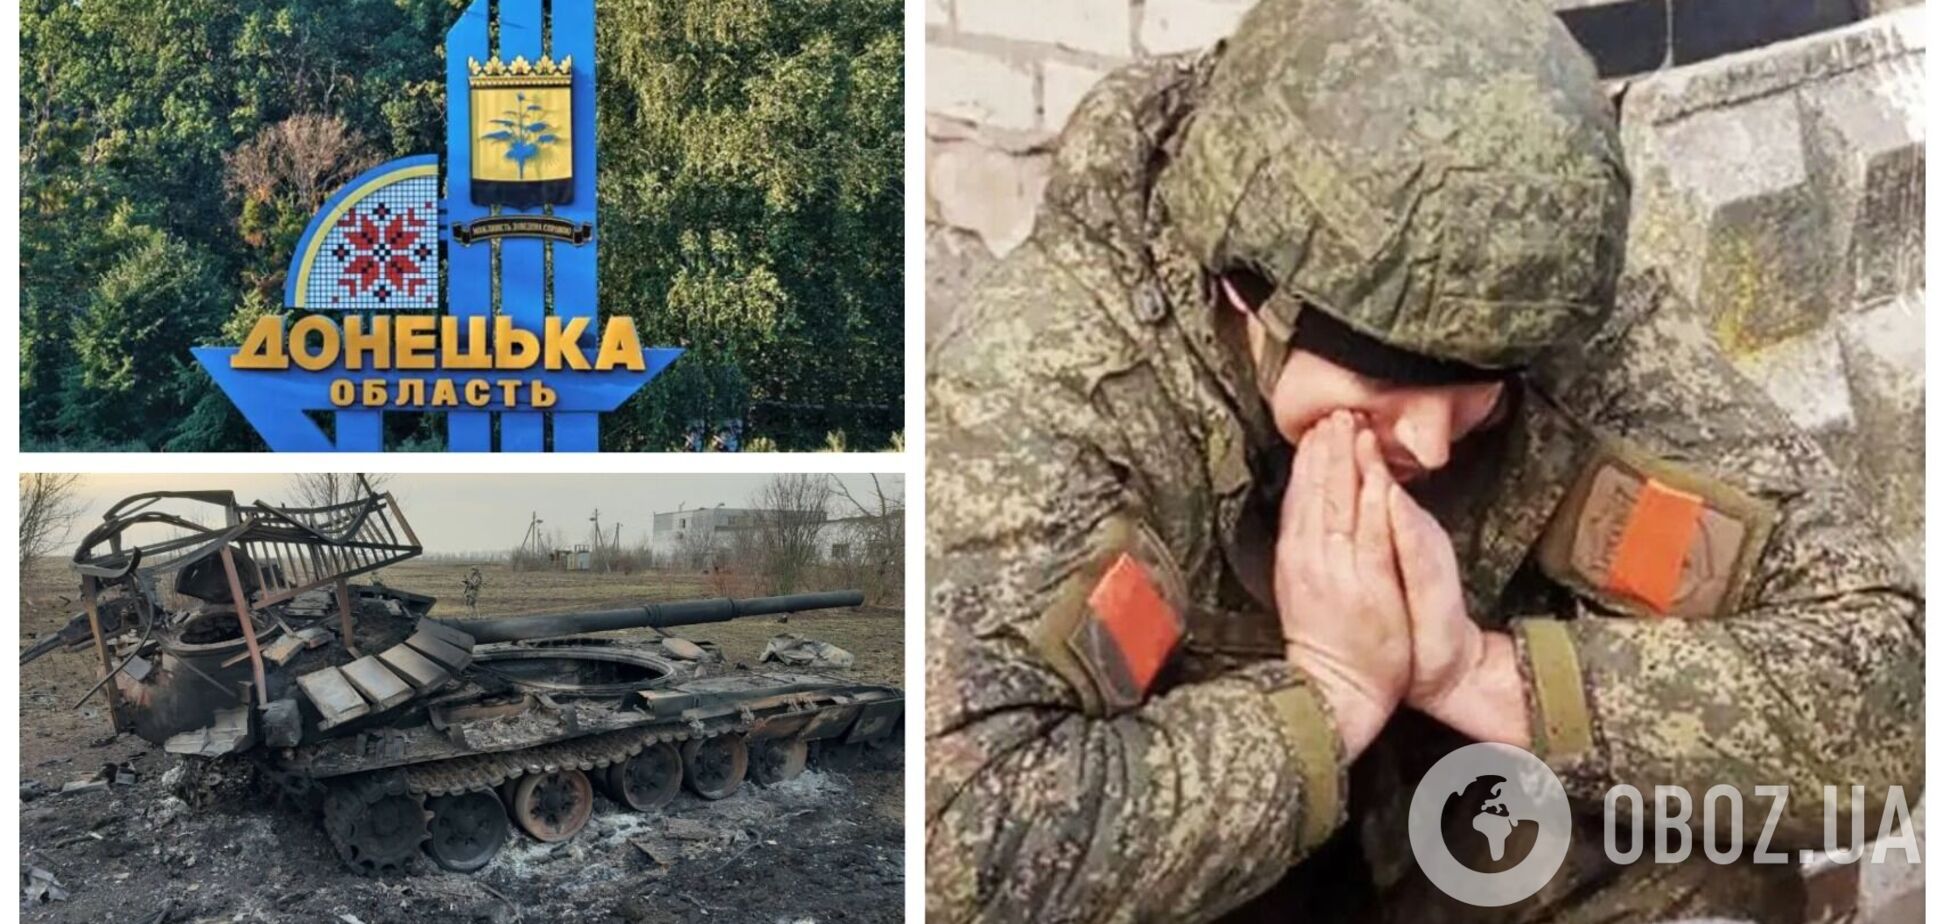 'Домой собираюсь': находящийся на Донецком направлении оккупант пожаловался на мощный натиск ВСУ. Видео